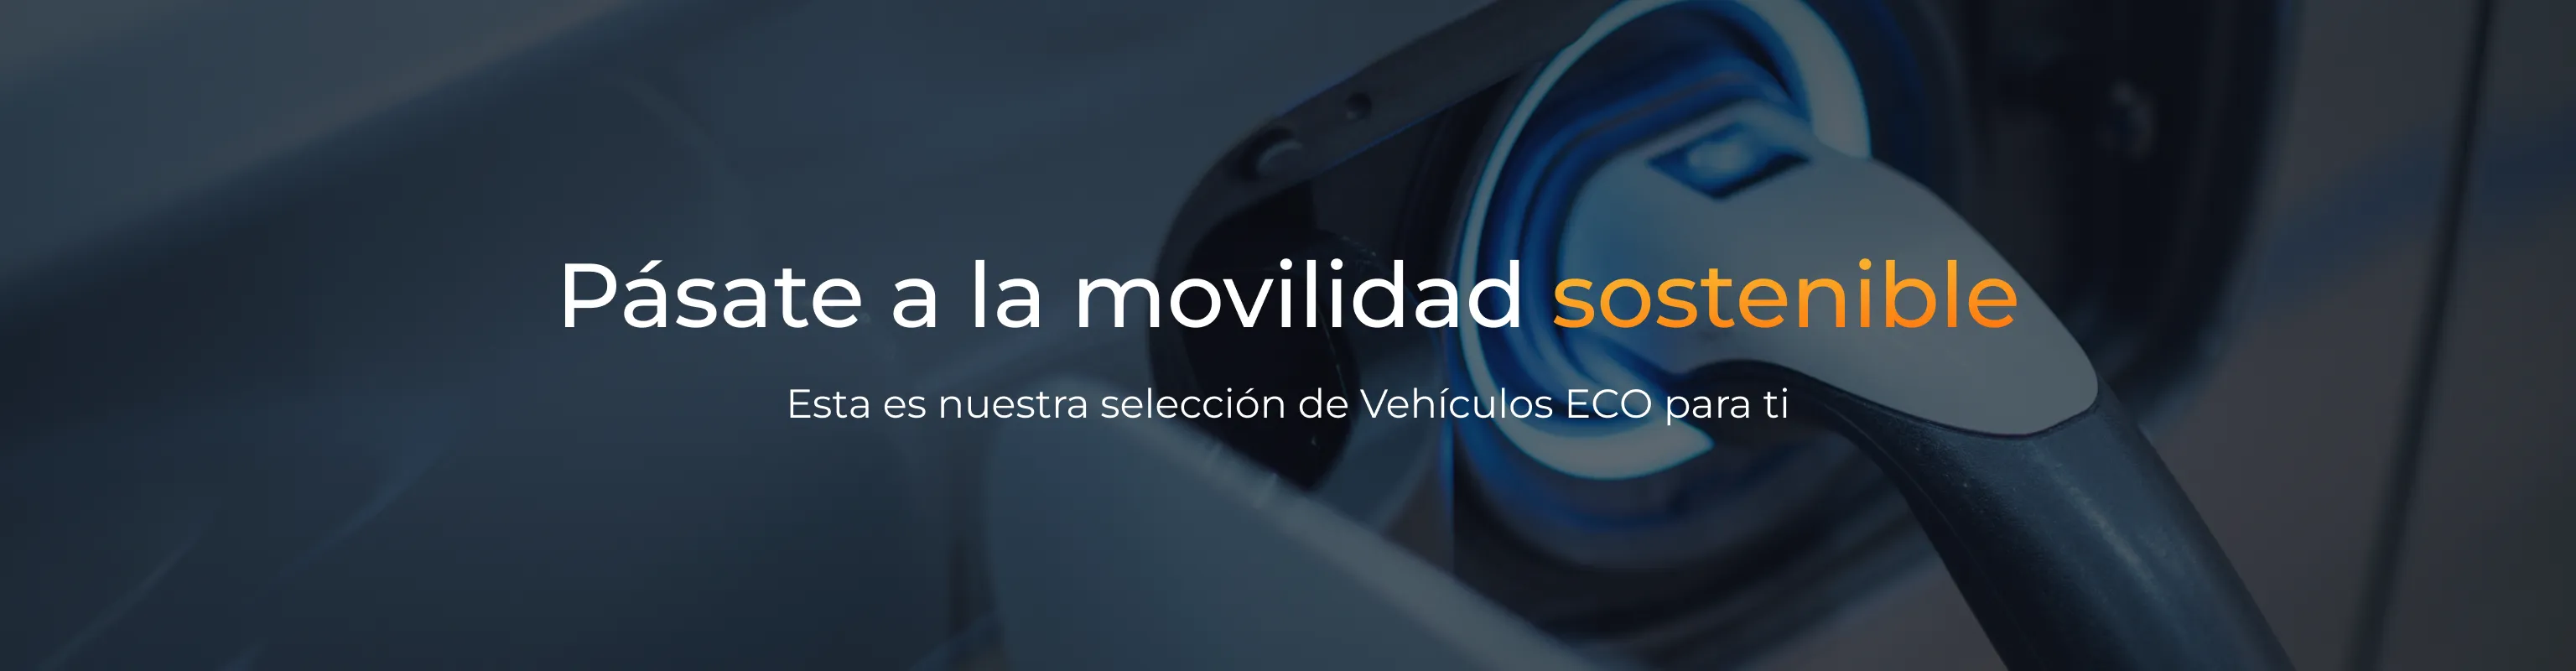 Vehículos Eco banner - Movilidad Sostenible